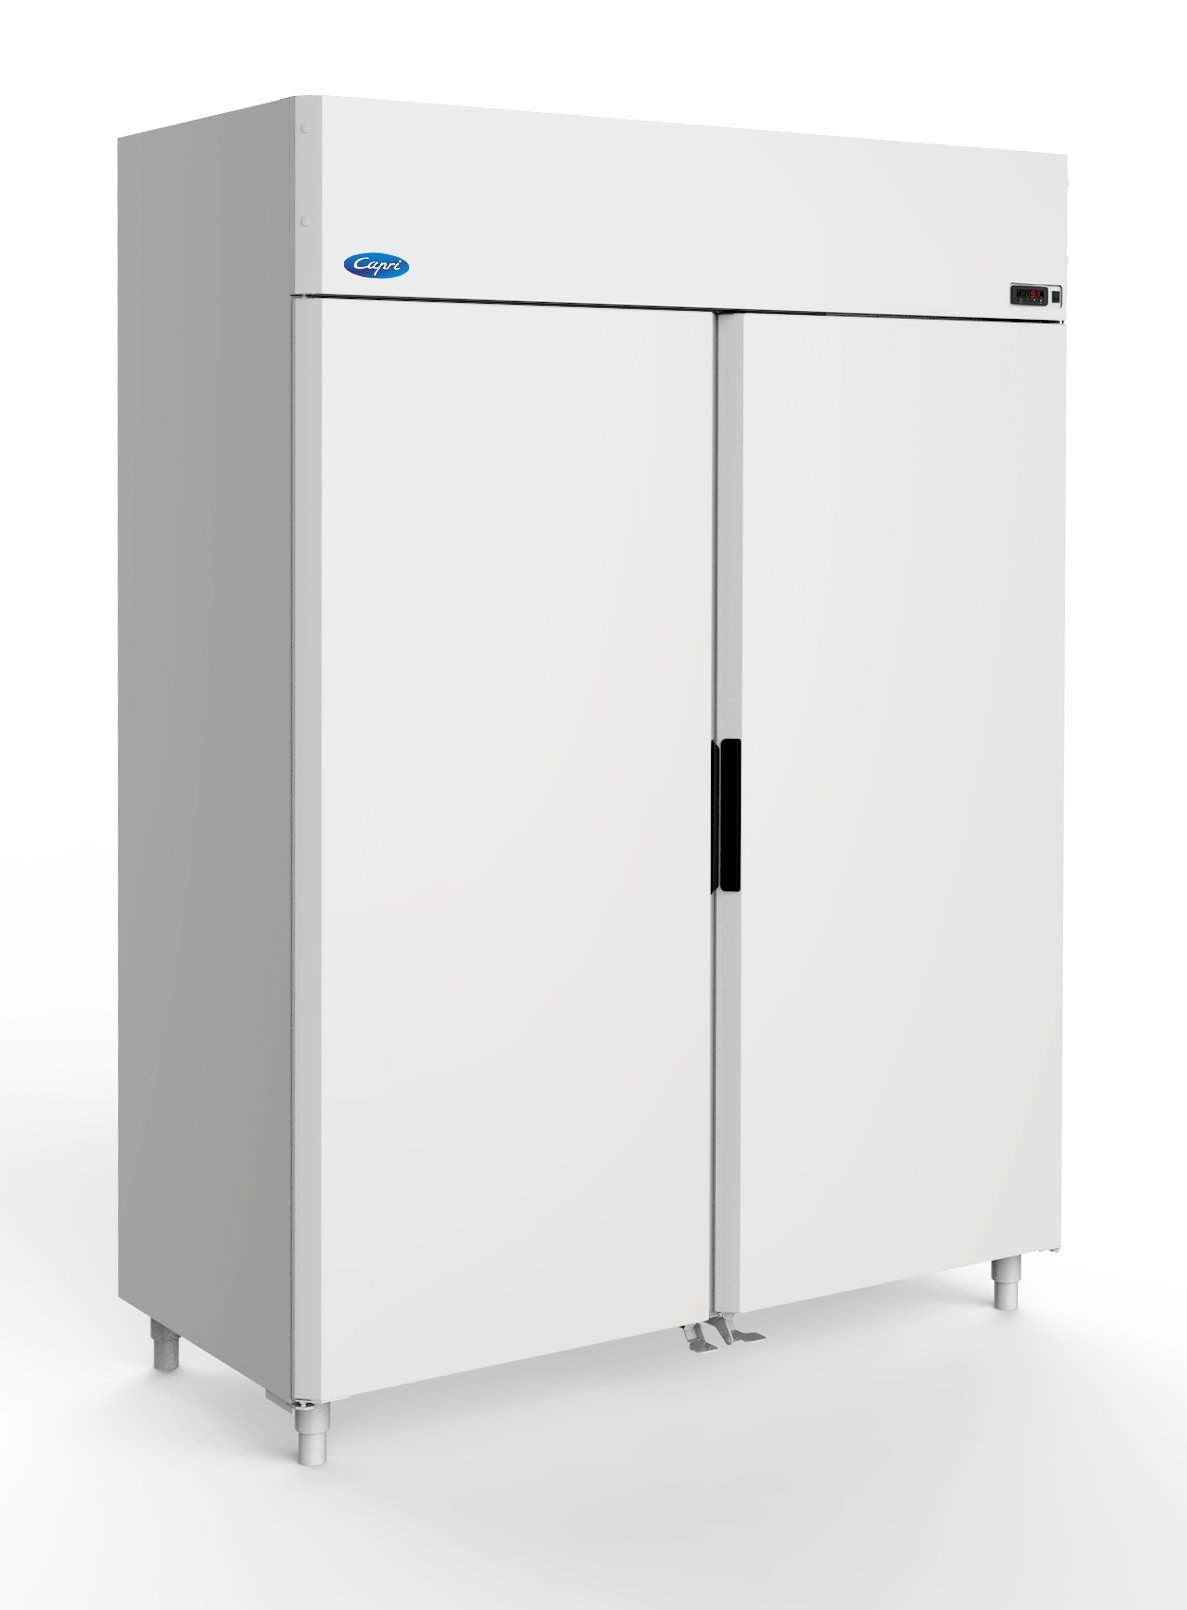 Холодильный шкаф Капри 1,12МВ